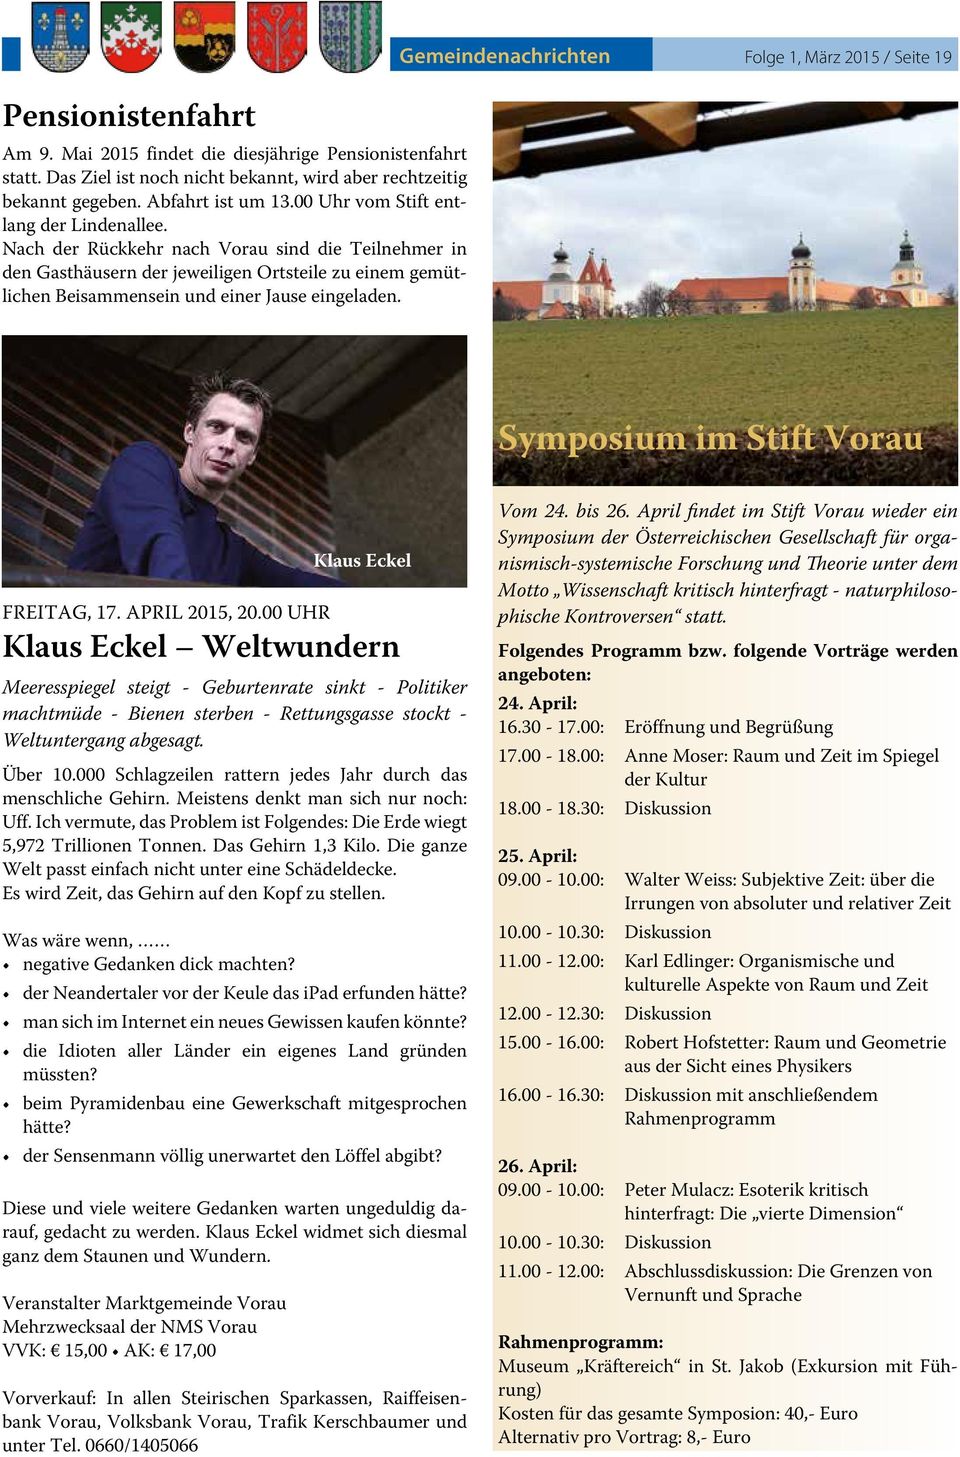 Gemeindenachrichten Folge 1, März 2015 / Seite 19 Symposium im Stift Vorau FREITAG, 17. APRIL 2015, 20.